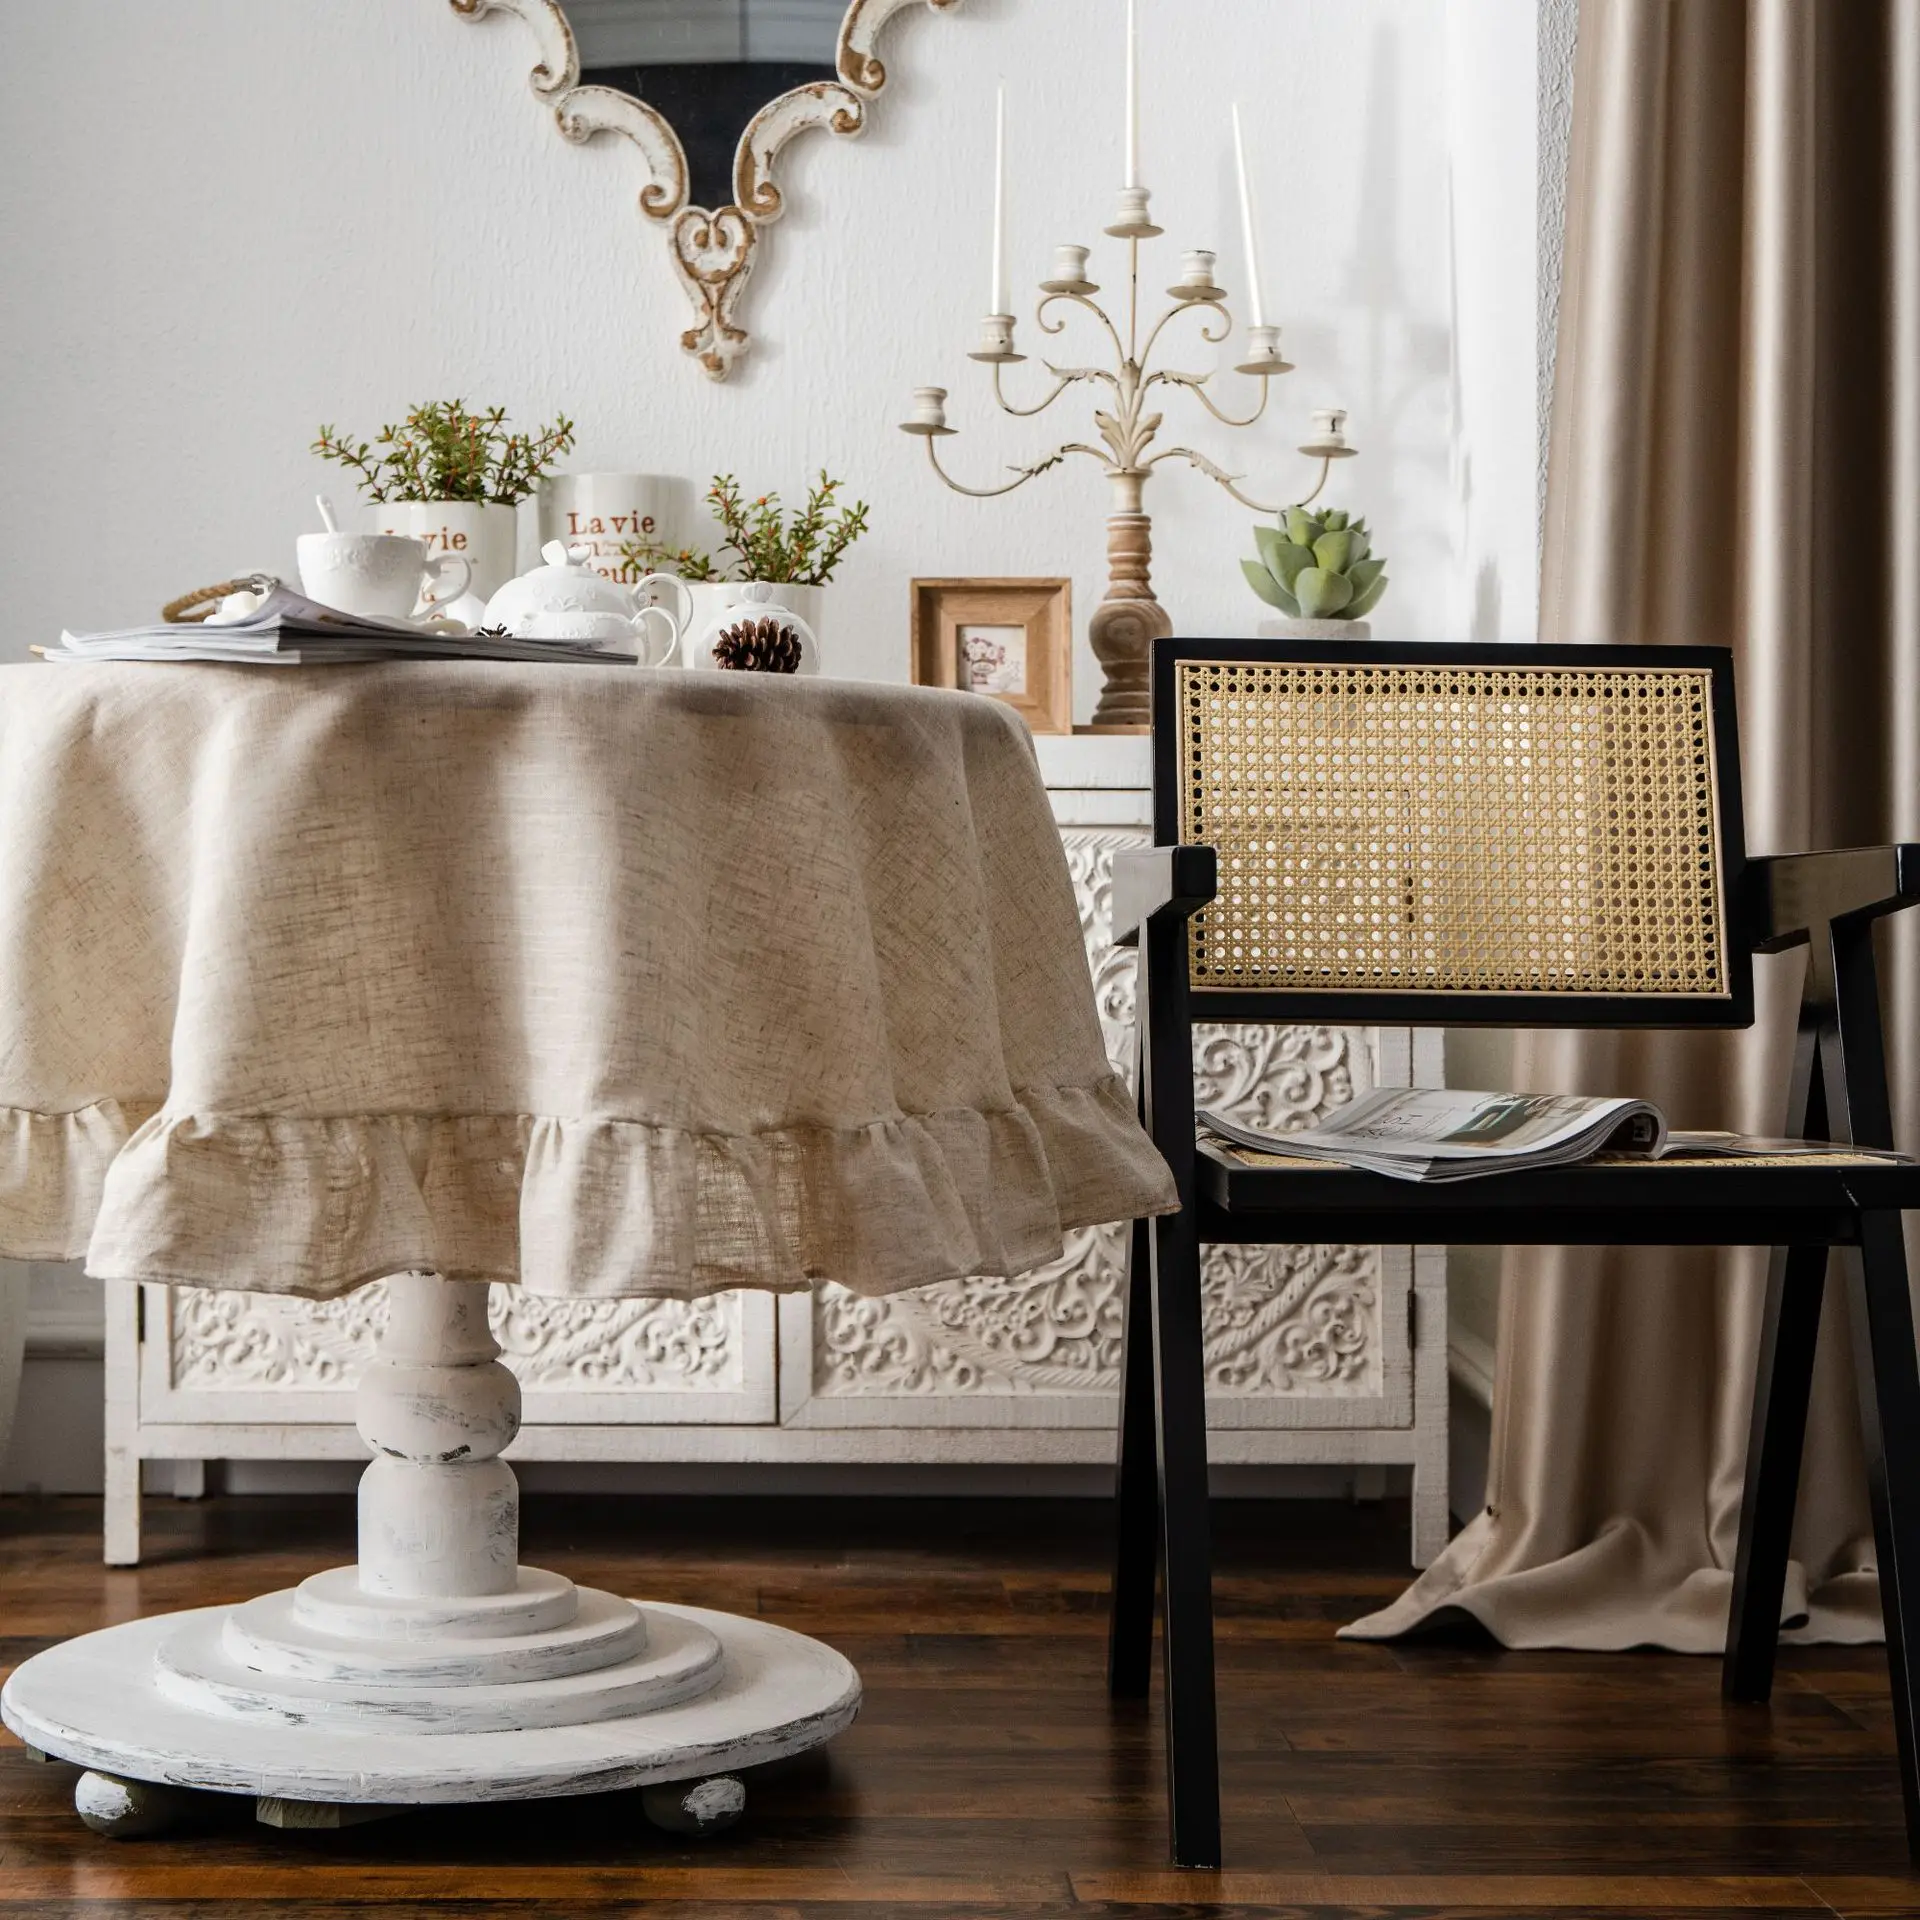 Ruffle Round Cotton Tablecloth, Cobertura de mesa lavável para férias, jantar, banquete, cozinha, decoração do casamento, guarnição